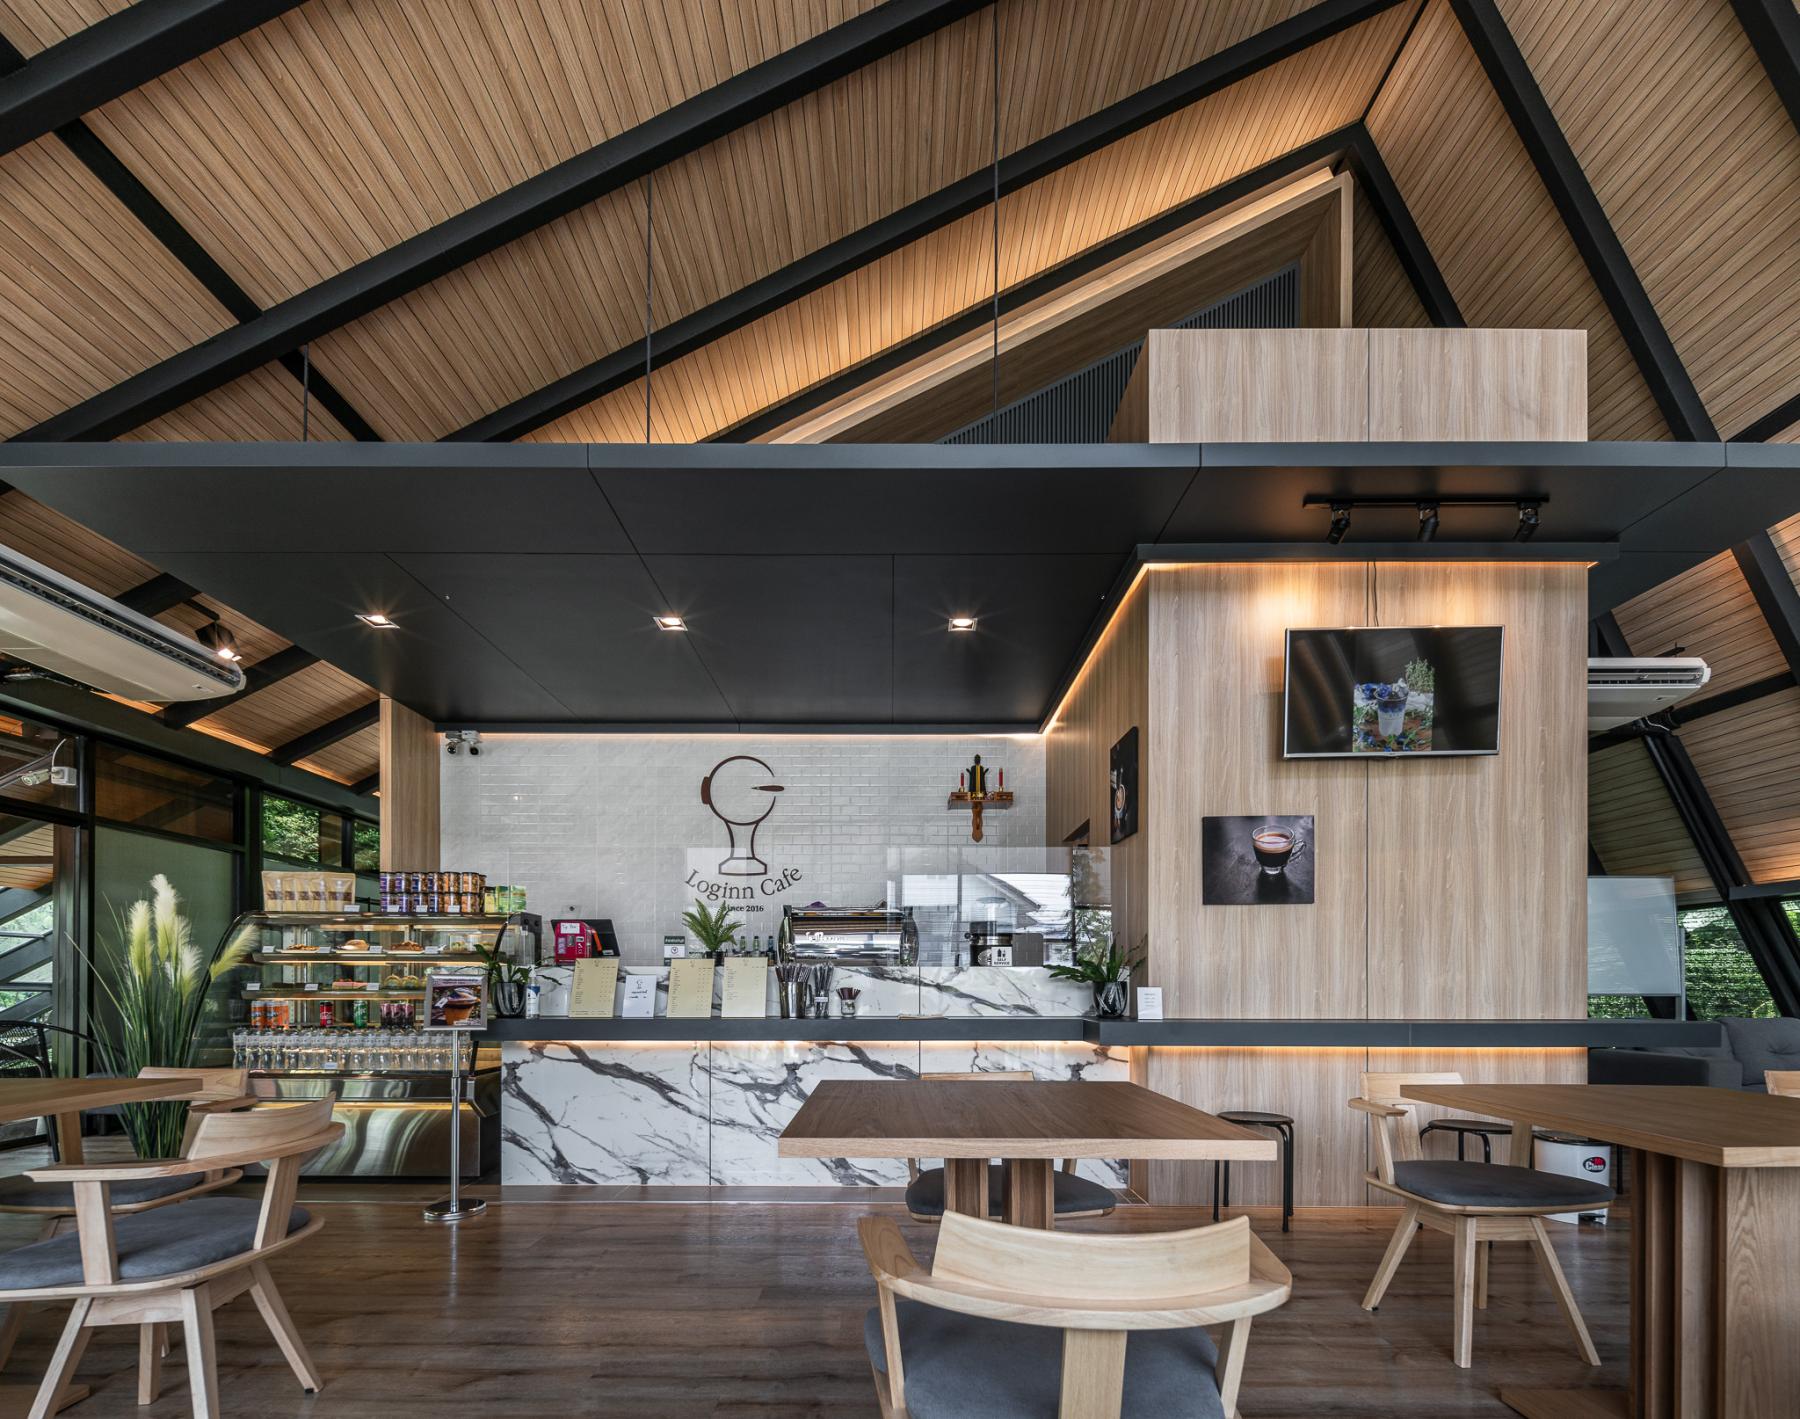 LOG IN CAFE 
Interior design 